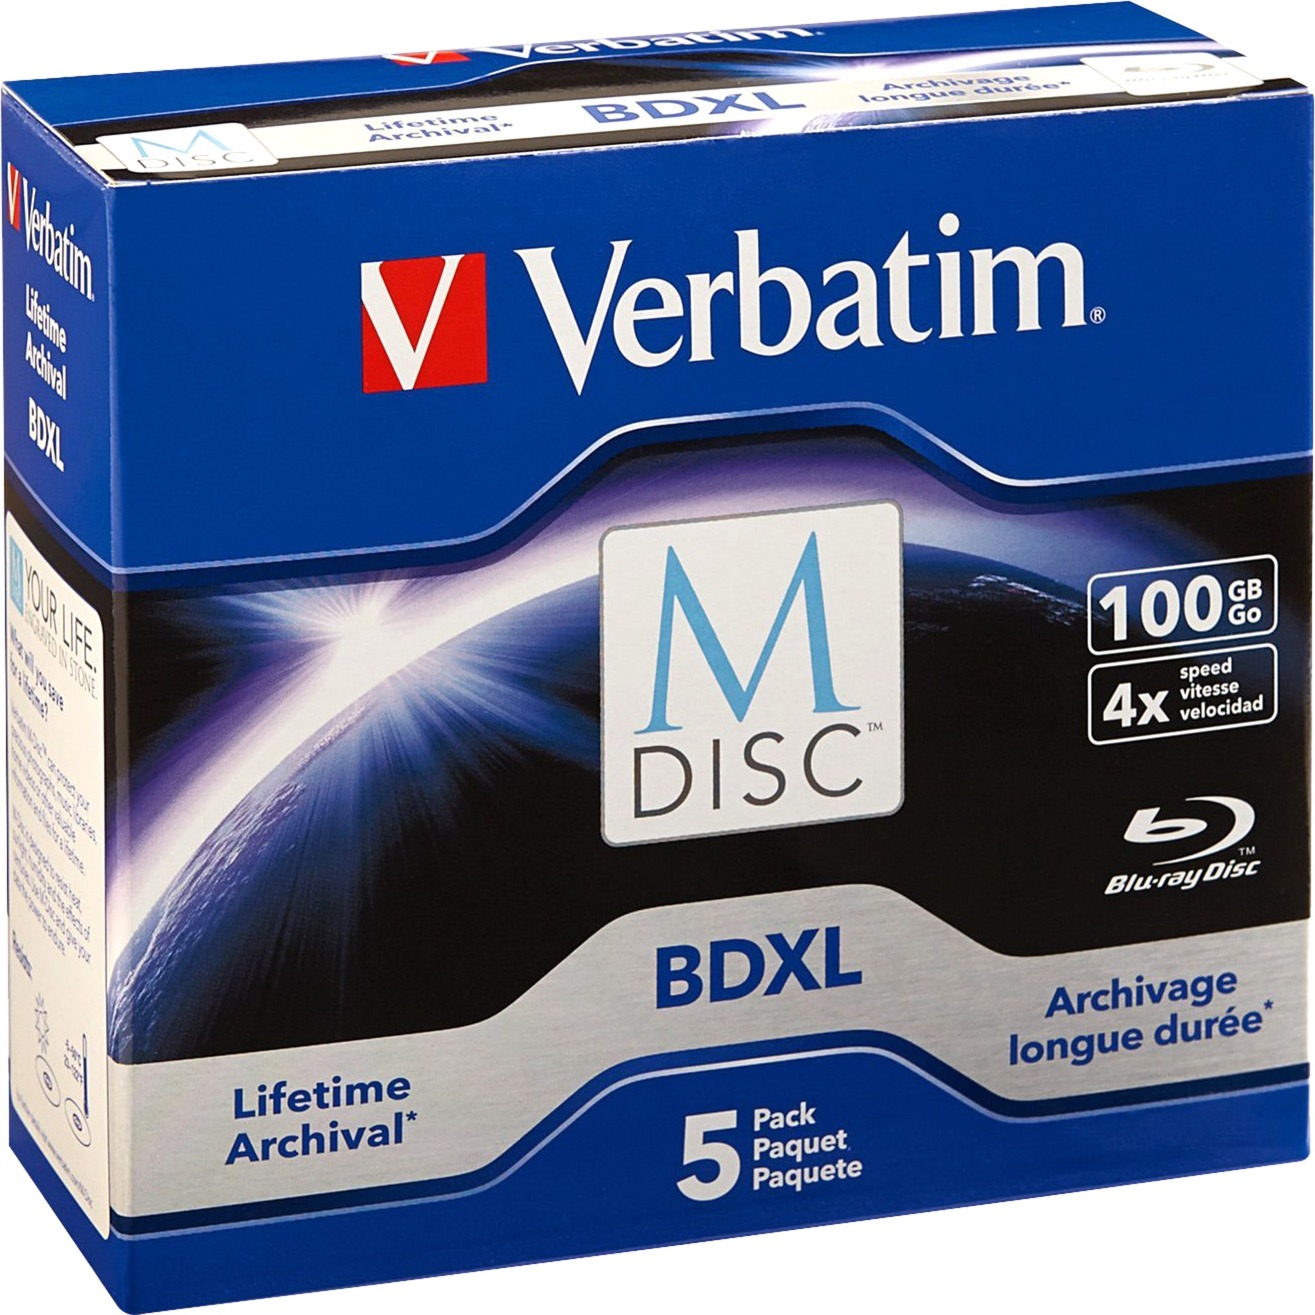 Image of Alternate - BD-R 100GB M-Disc, Blu-ray-Rohlinge online einkaufen bei Alternate